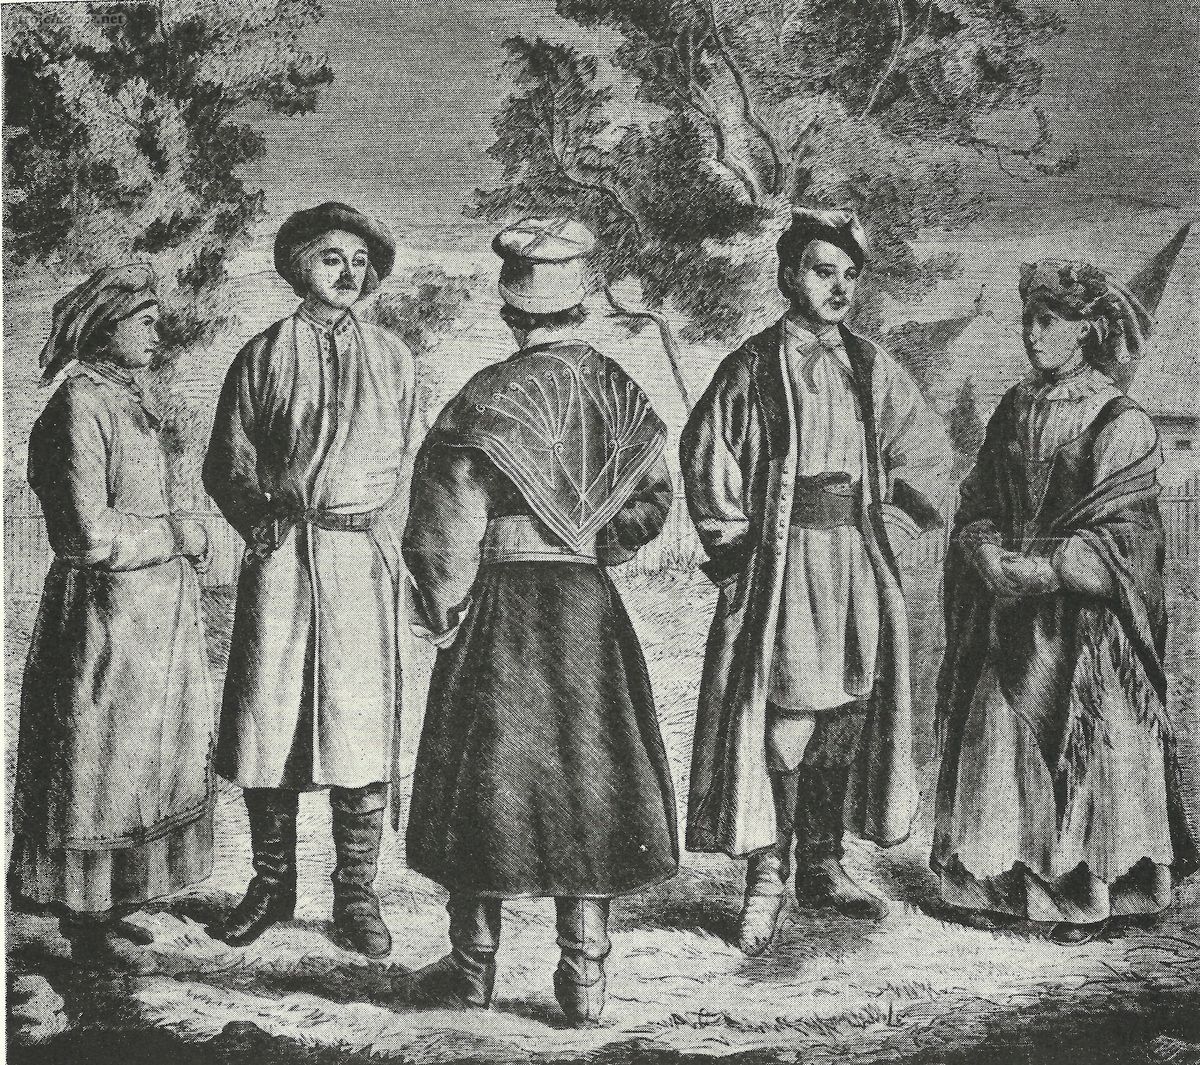 Świąteczne ubiory ludowe z okolic Skalbmierza, rys. Władysław Szerner, „Tygodnik Ilustrowany” 1864